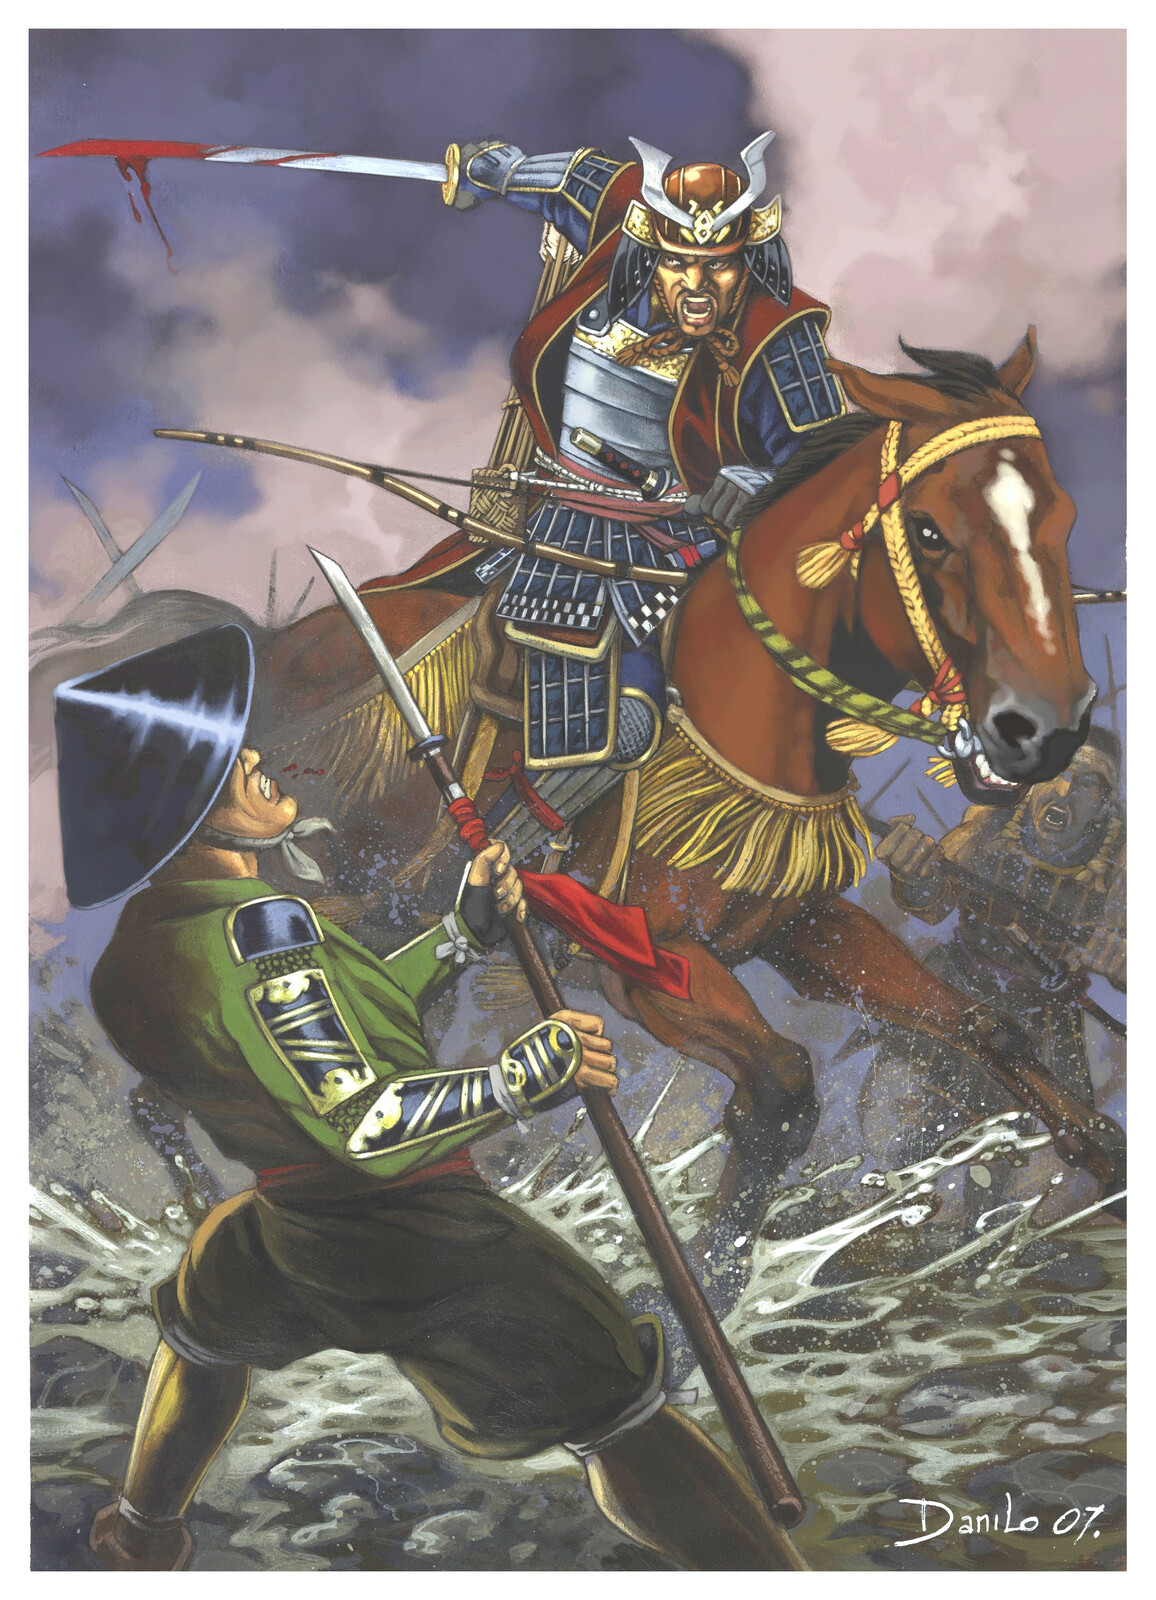 Yamauchi Kazutoyo.
Samurai, Ediciones Salo.